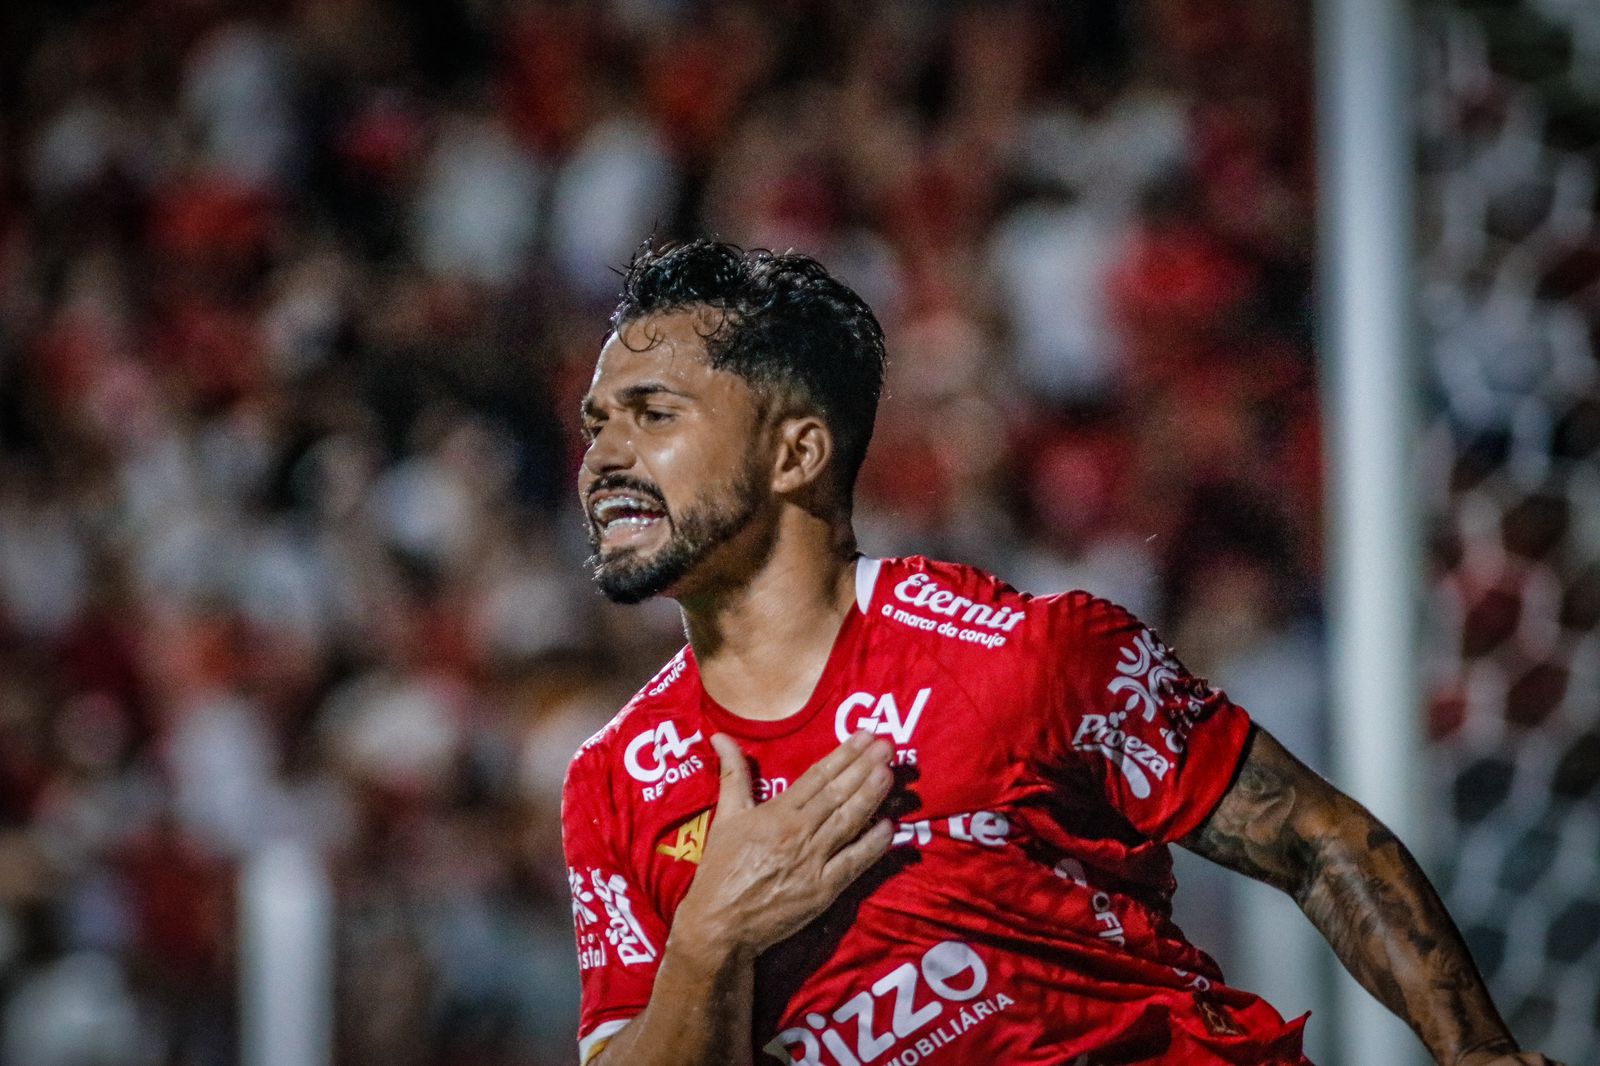 Após marcar contra ex-clube, Alesson dispara sobre passagem no Goiás “ano mais difícil da minha carreira”